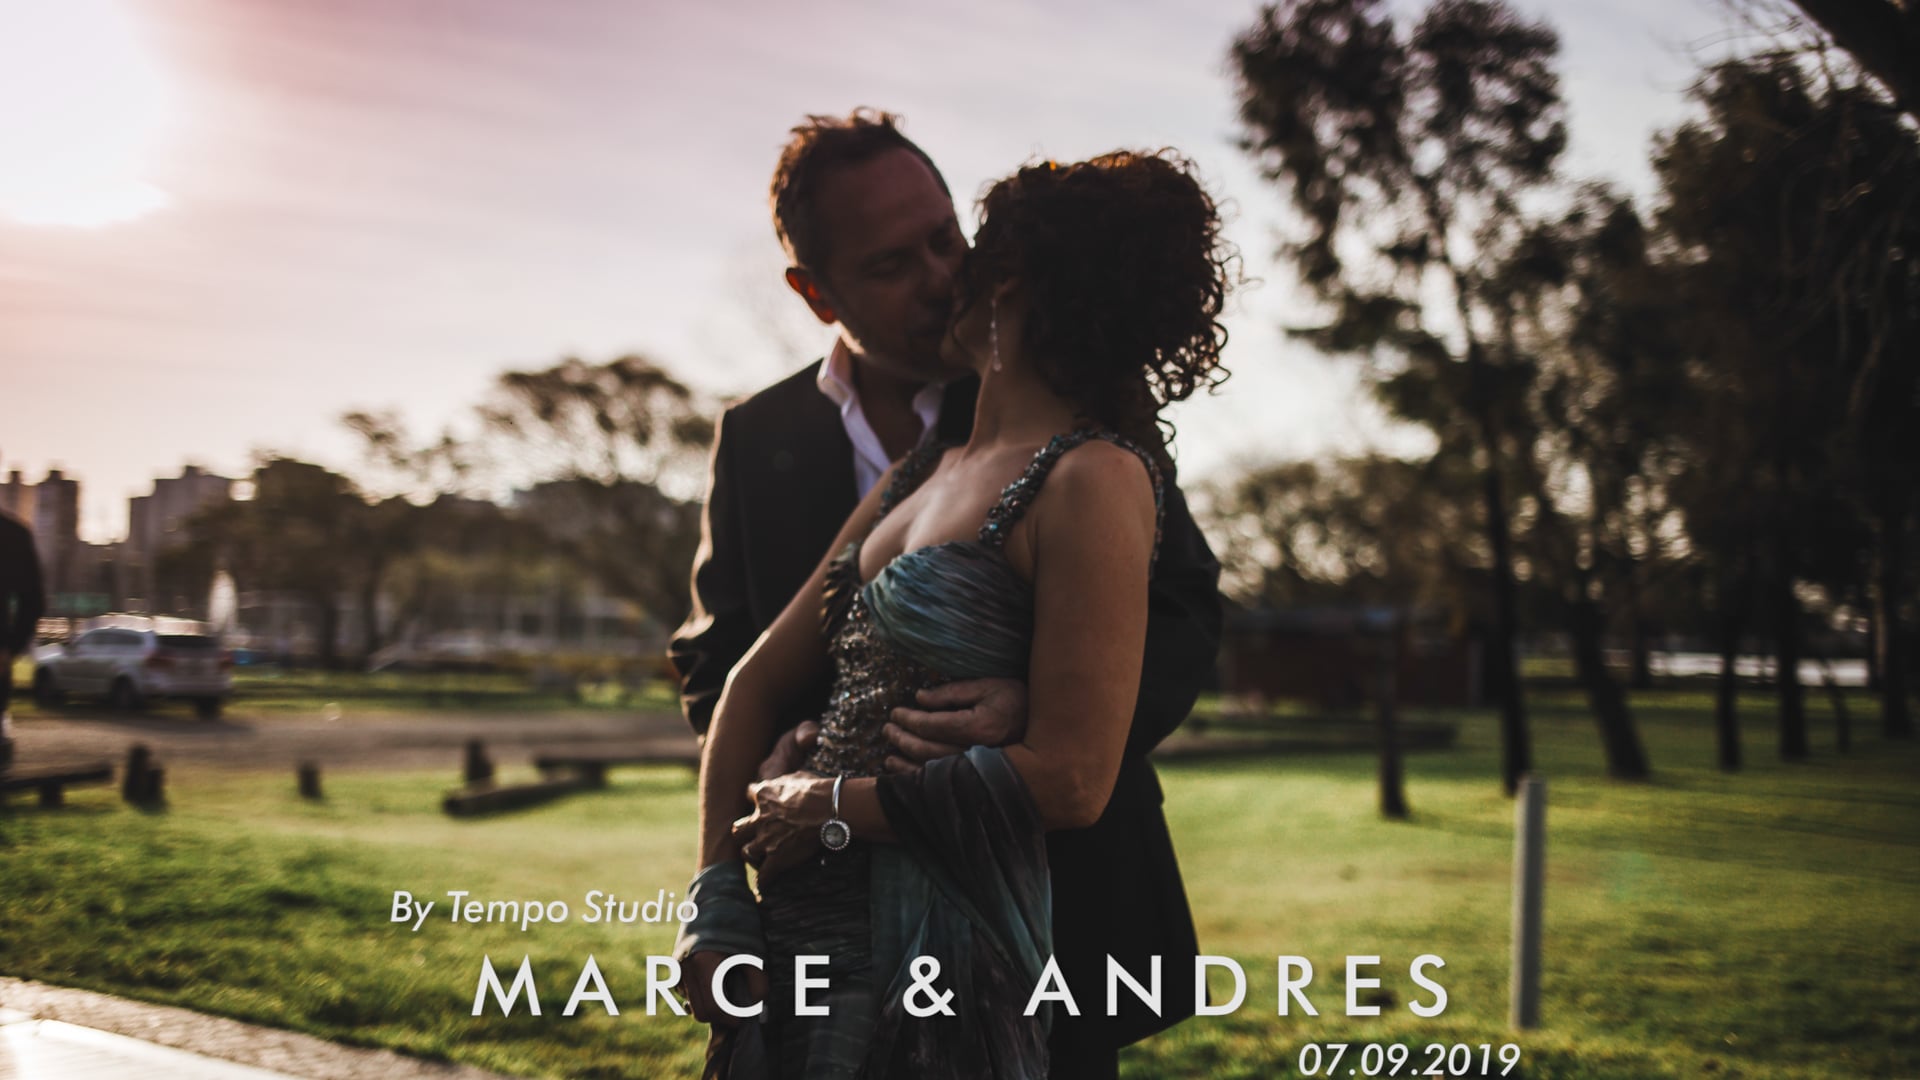 Marce & Andrés | Trailer